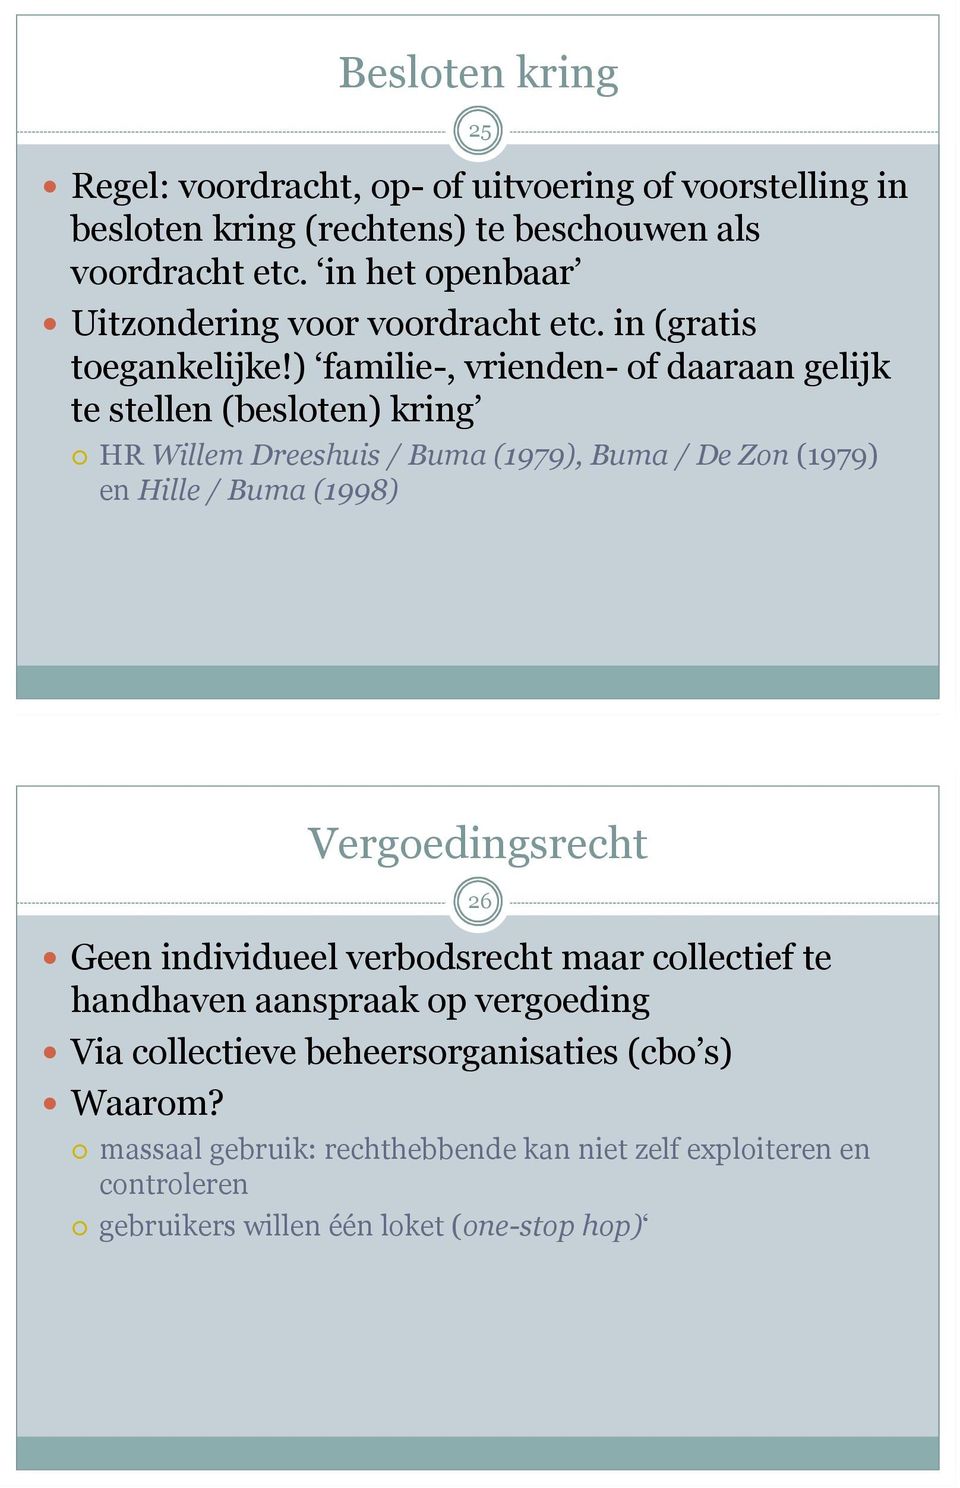 ) familie-, vrienden- of daaraan gelijk te stellen (besloten) kring HR Willem Dreeshuis / Buma (1979), Buma / De Zon (1979) en Hille / Buma (1998)